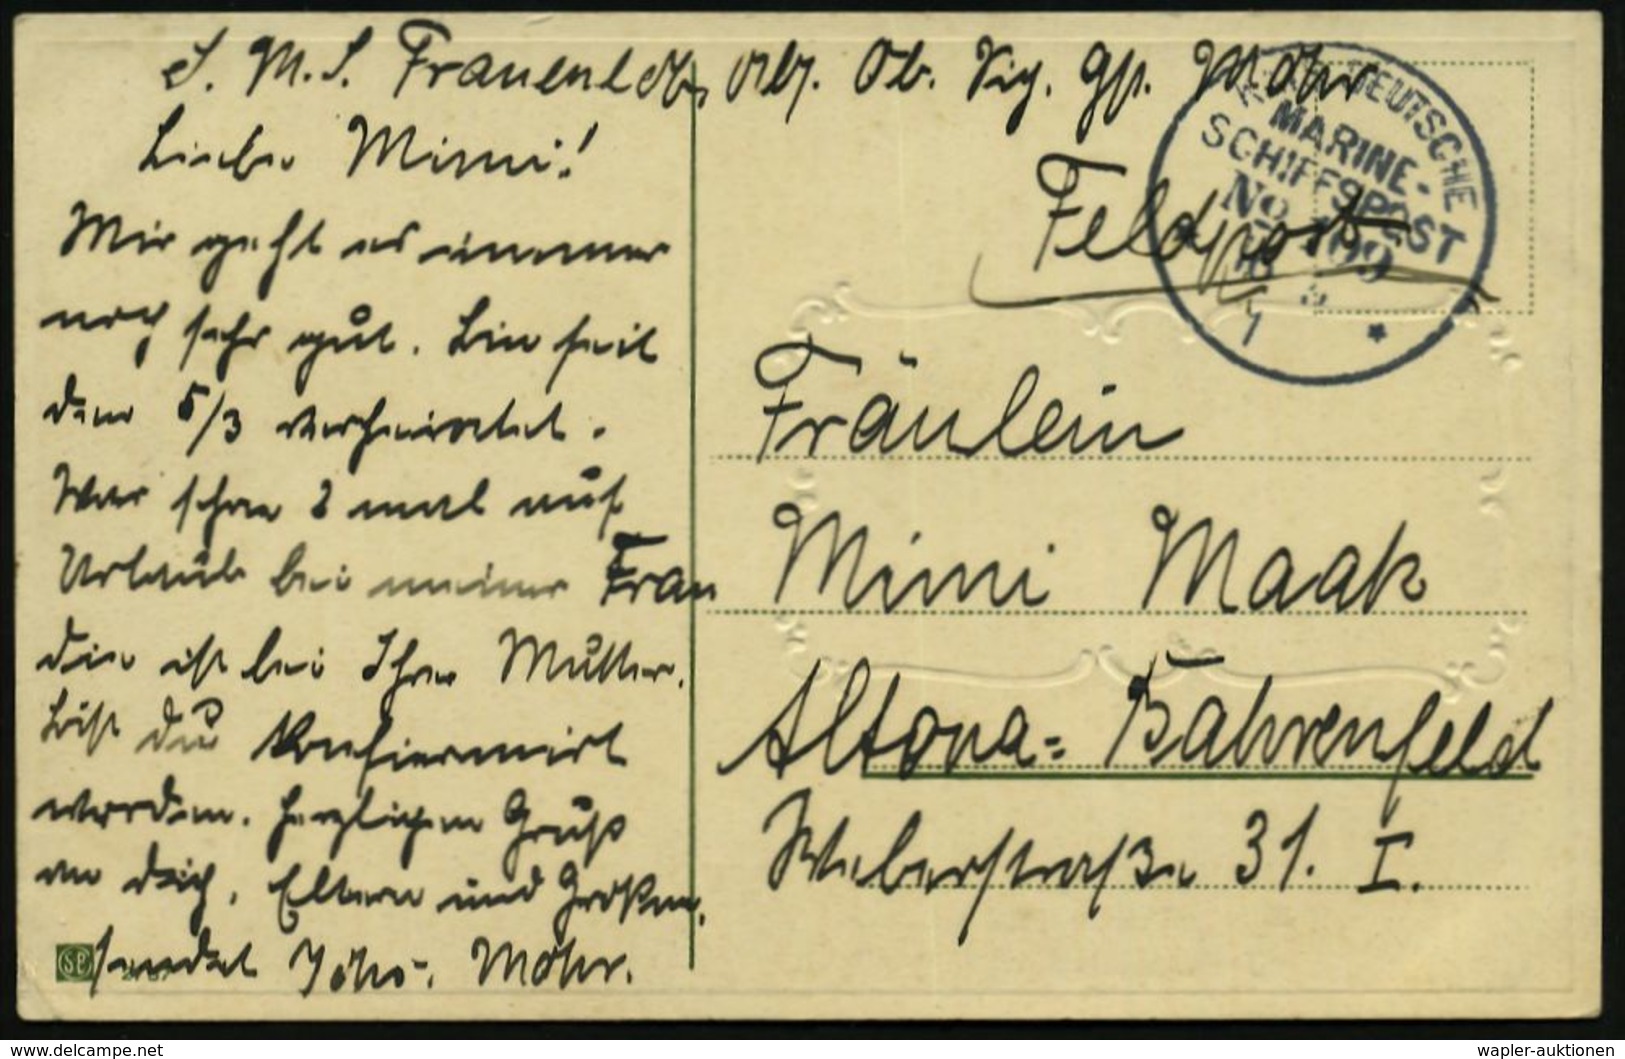 DEUTSCHES REICH 1915 (18.5.) 1K-BPA: KAIS. DEUTSCHE/MARINE-/SCHIFFSPOST/No. 109 = S.M.S. "Frauenlob", Kleiner Kreuzer, A - Schiffahrt